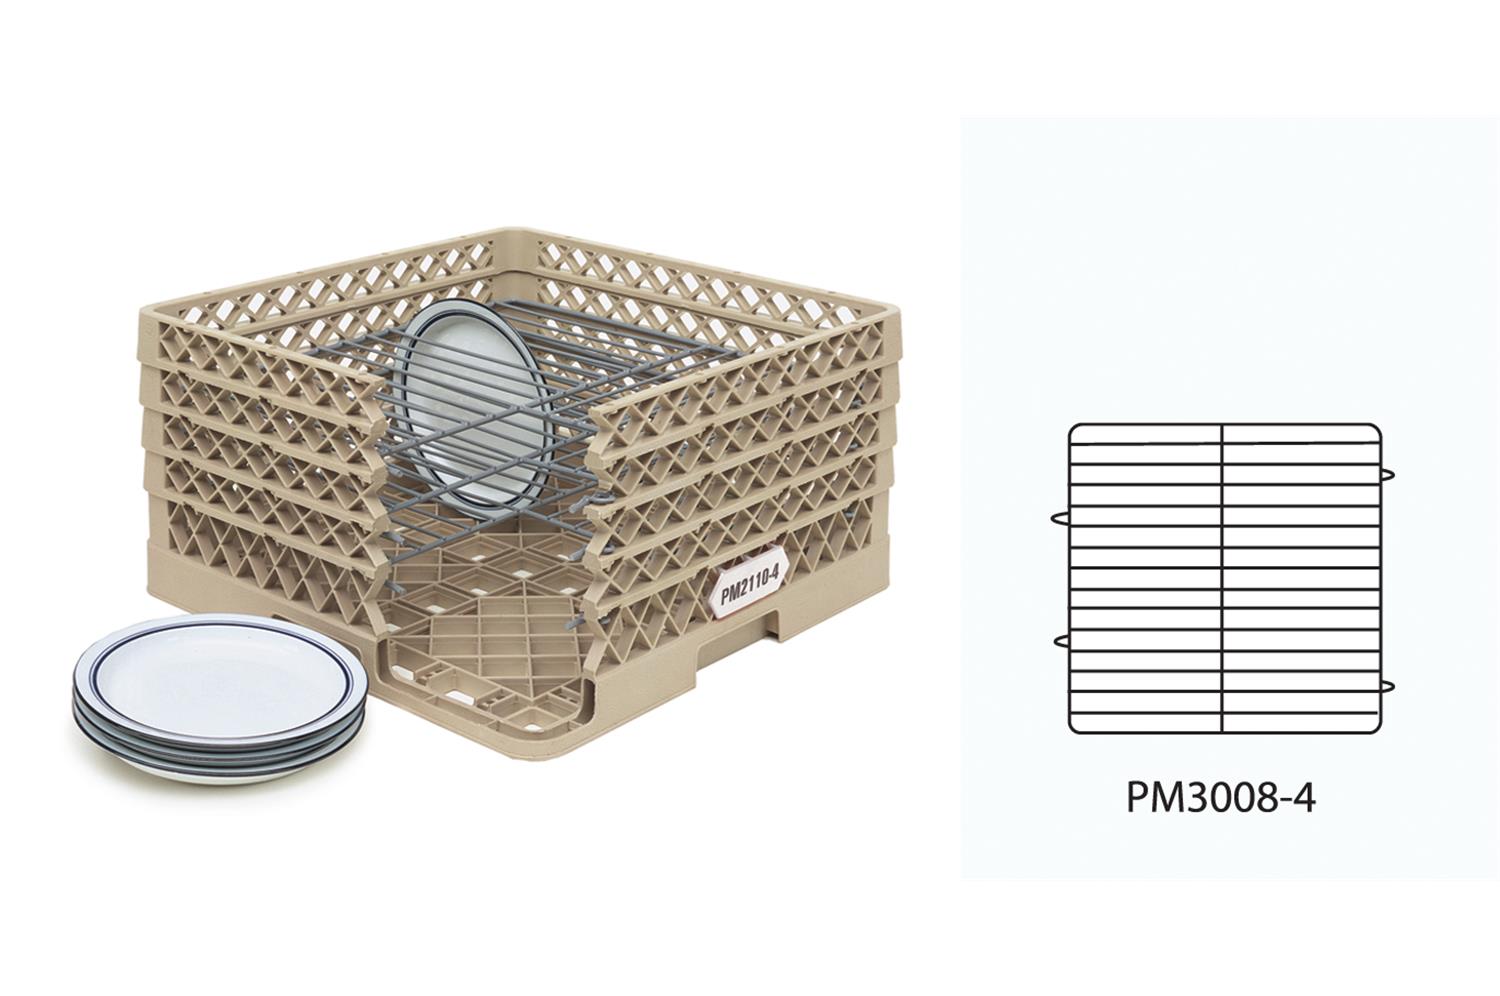 Vollrath PM3008-4 Traex Plate Crate Warewashing System